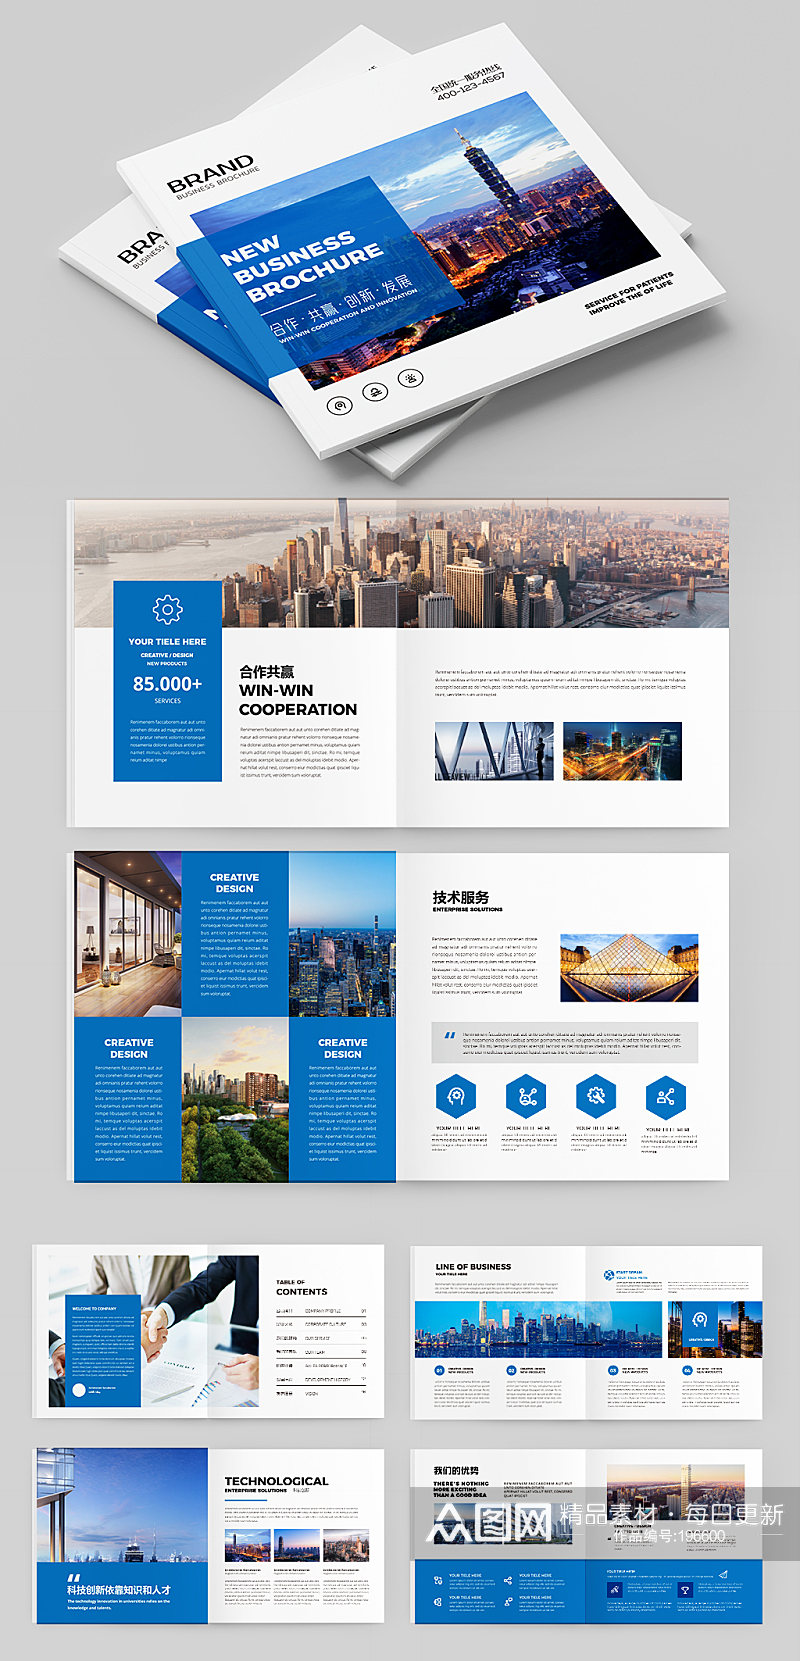 蓝色画册企业宣传册设计模板 企业宣传册欣赏素材